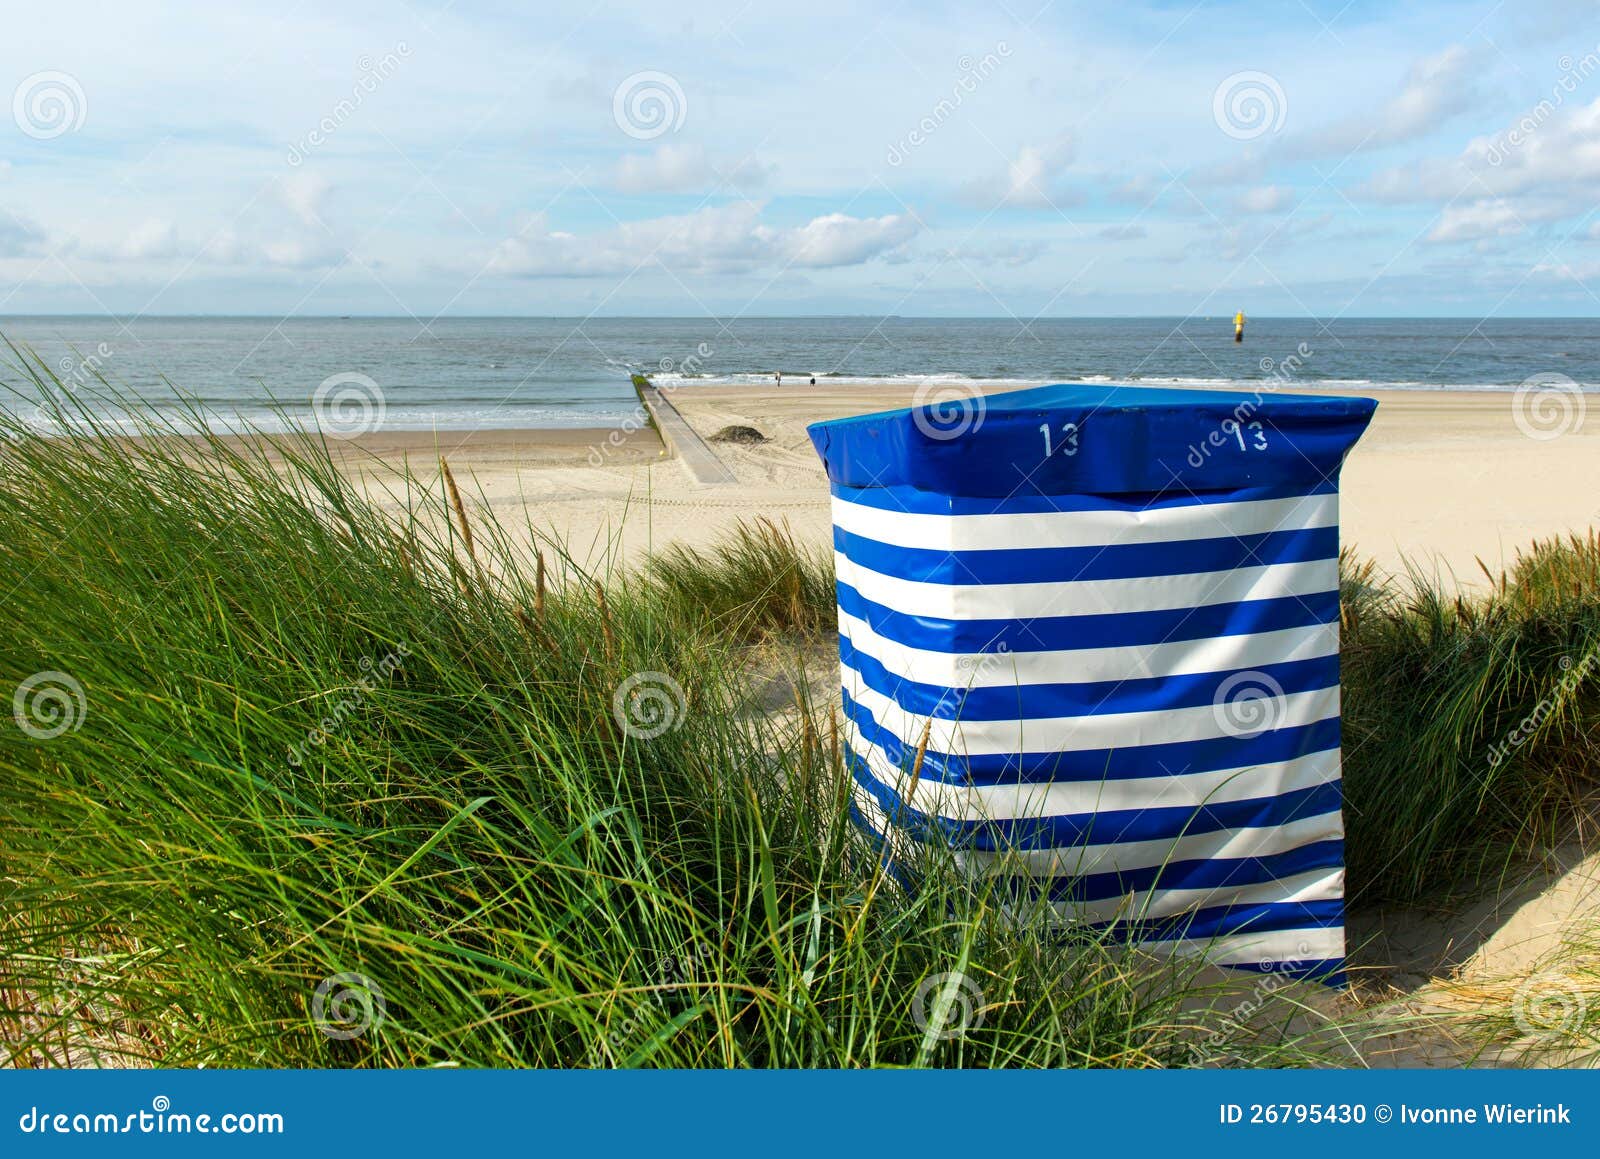 在海运的海滩睡椅. 在海岛Borkum的镶边海滩睡椅